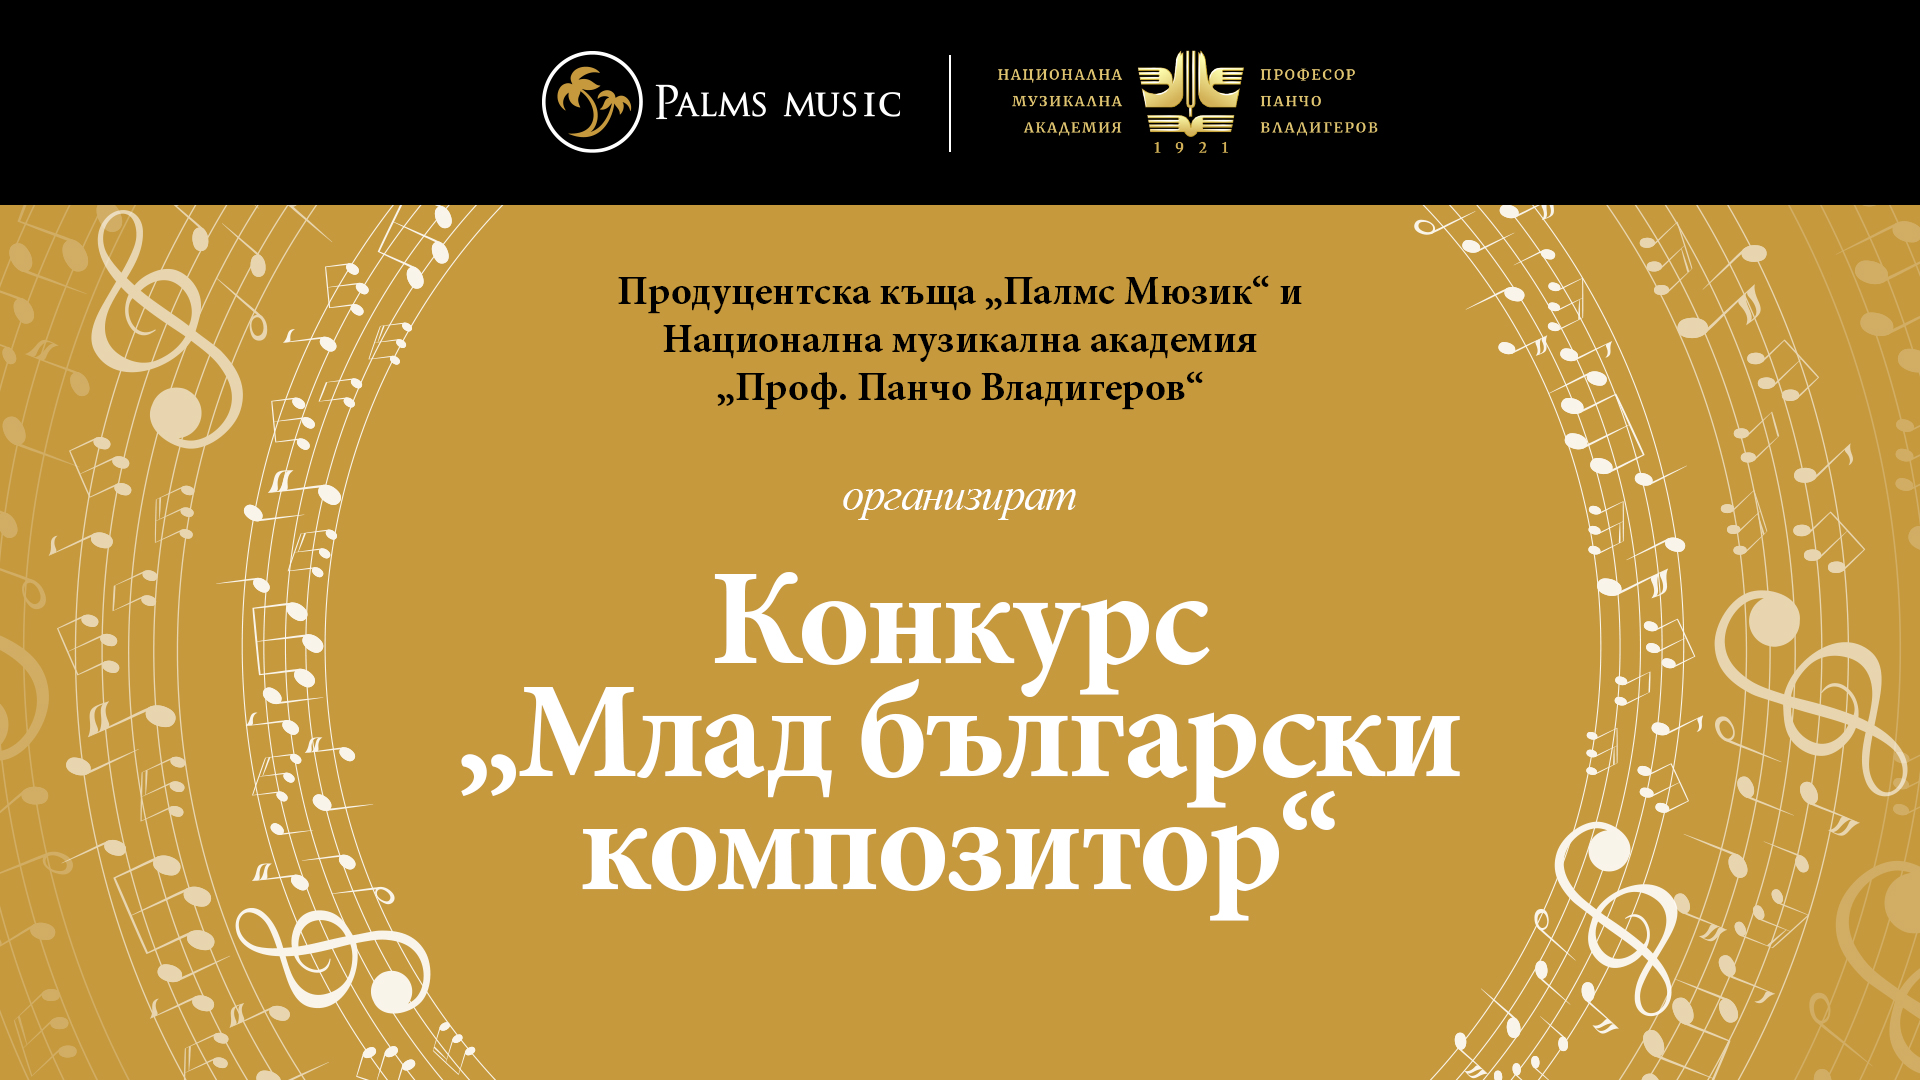 Palms Music и Музикалната академия организират най-големия конкурс за млад български композитор